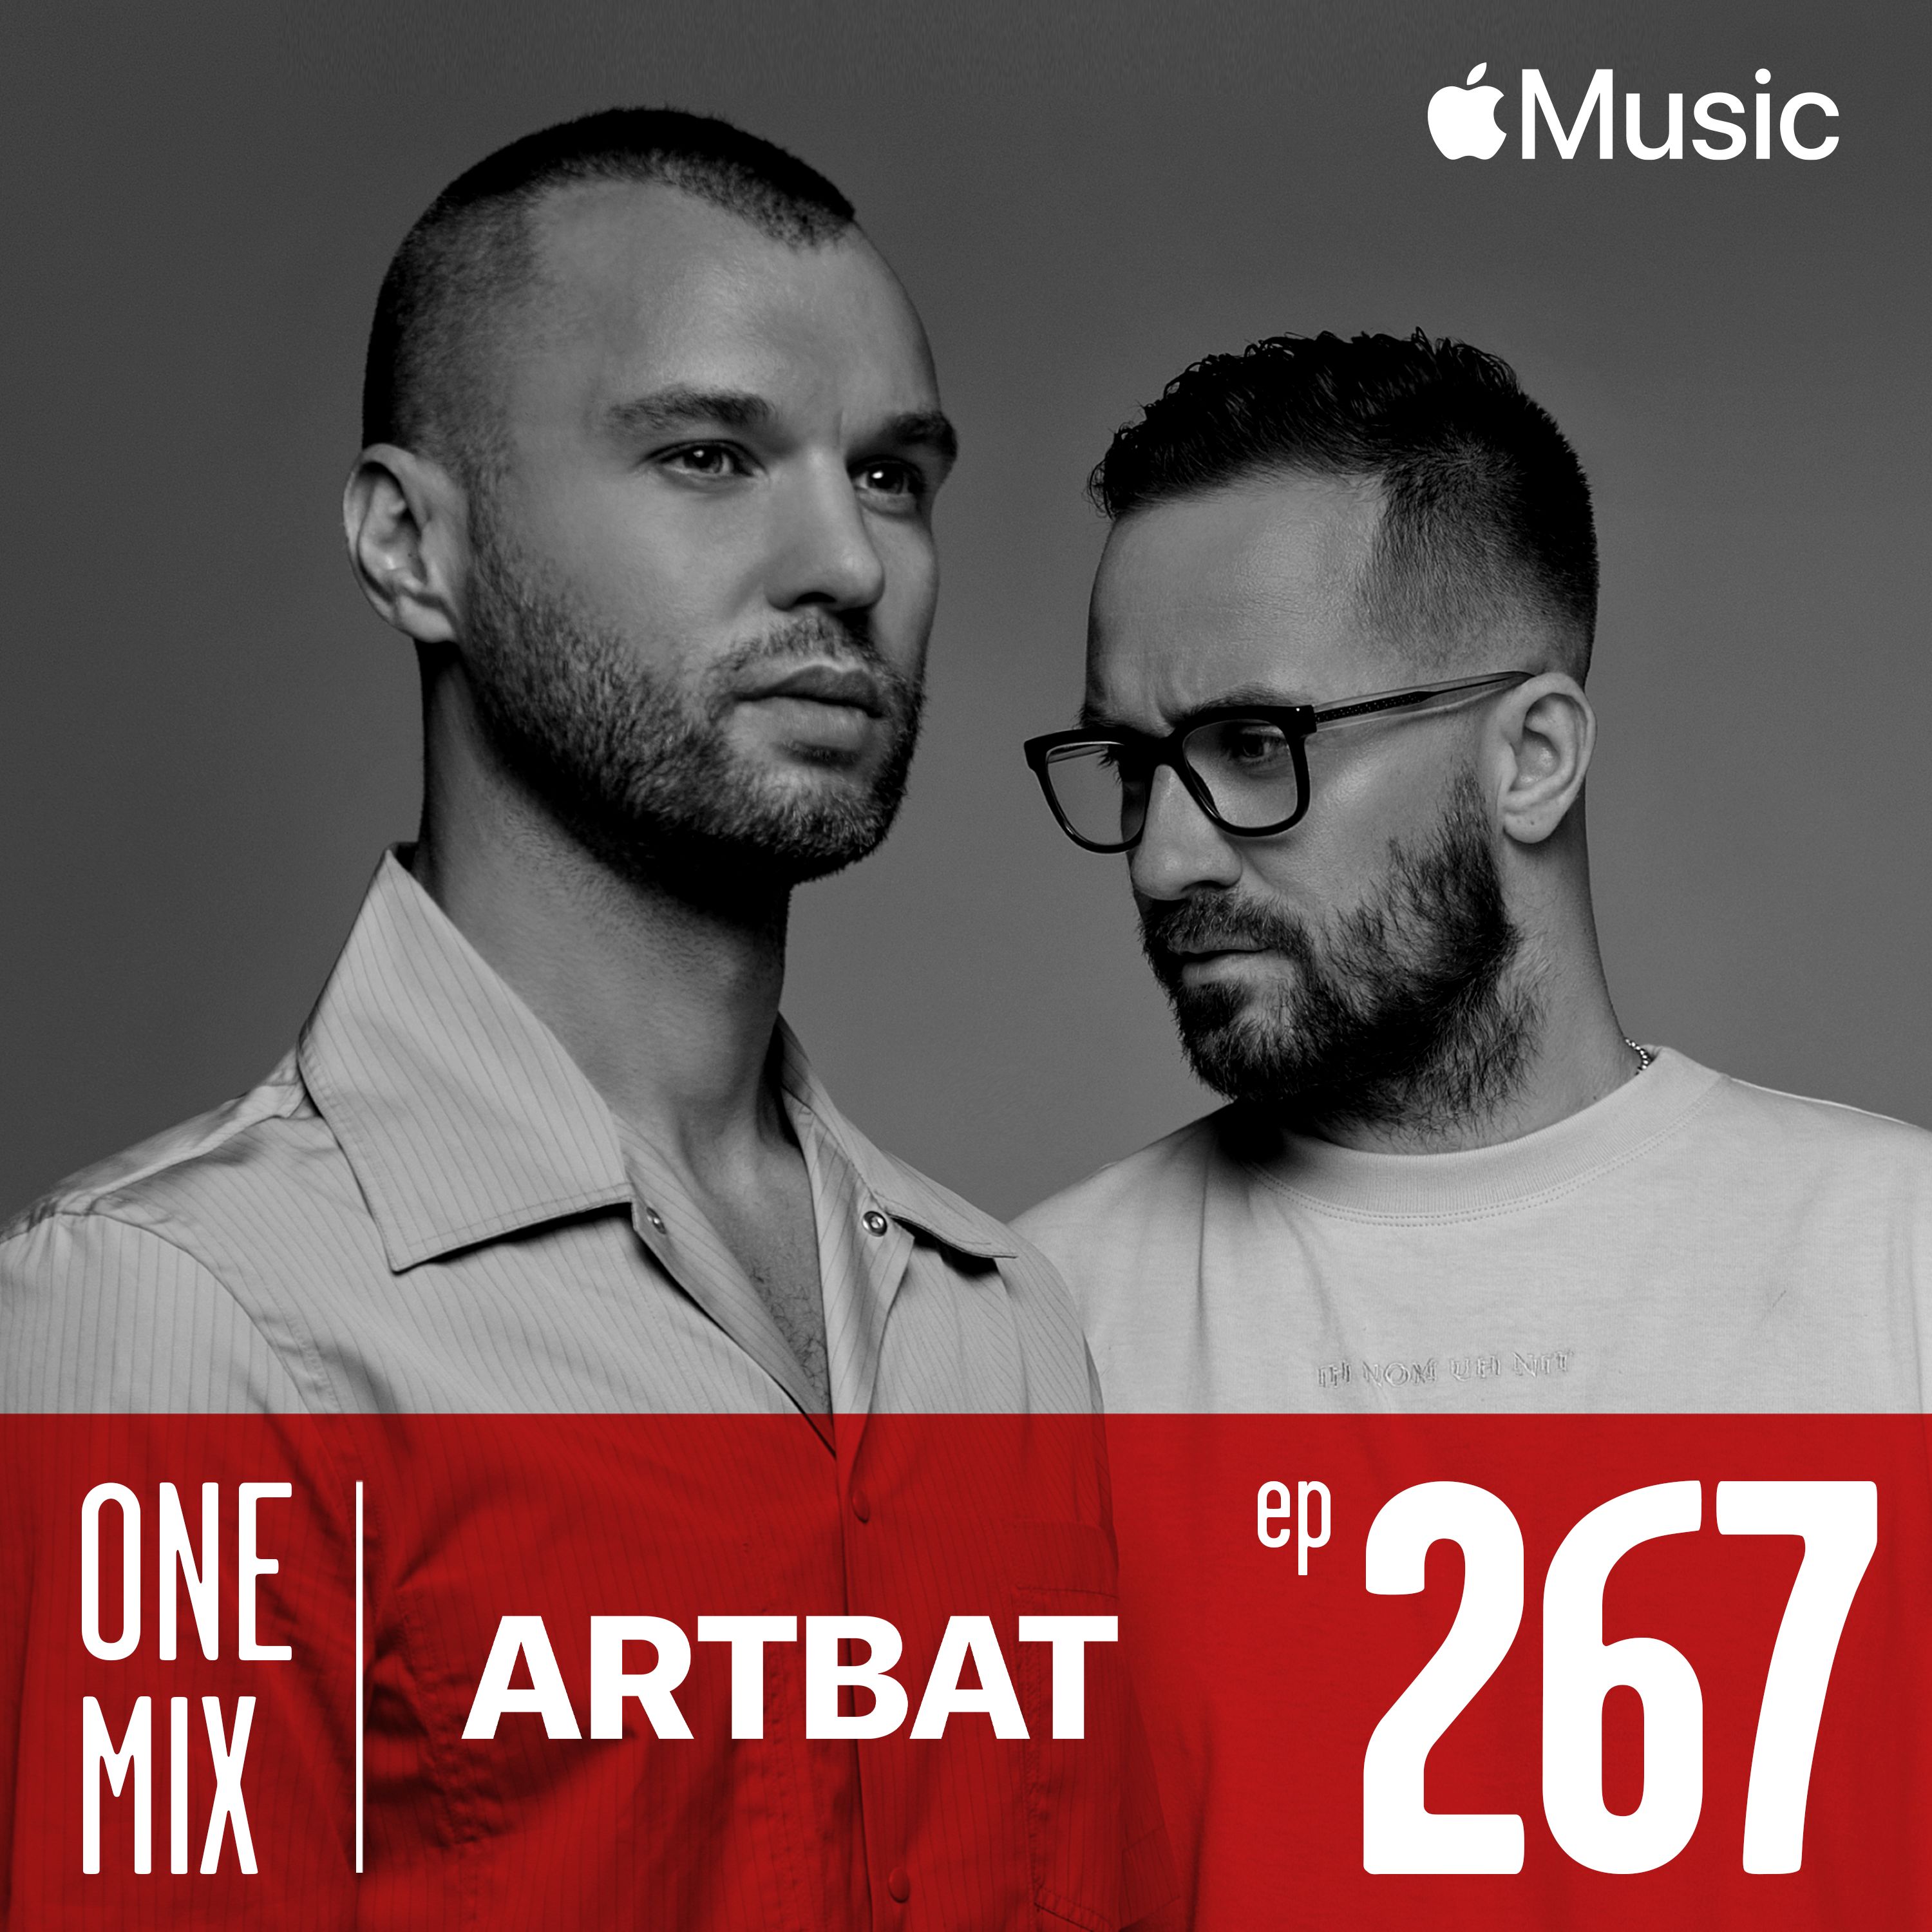 Herunterladen One Mix with ARTBAT | #267 Apple Music